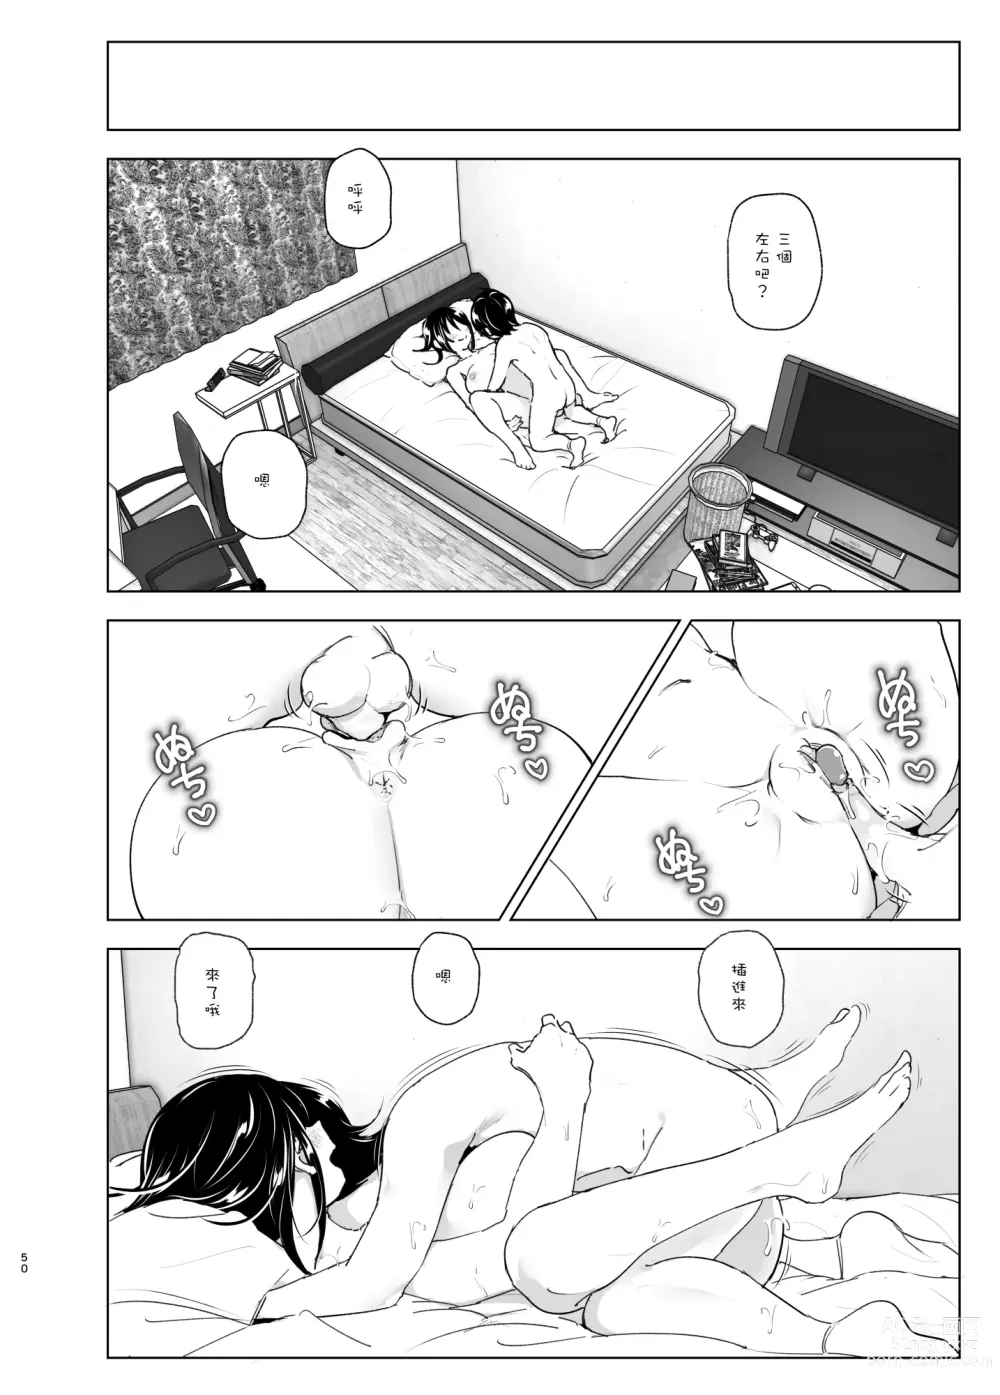 Page 49 of doujinshi 姐姐與傾聽抱怨的弟弟的故事 2 (decensored)